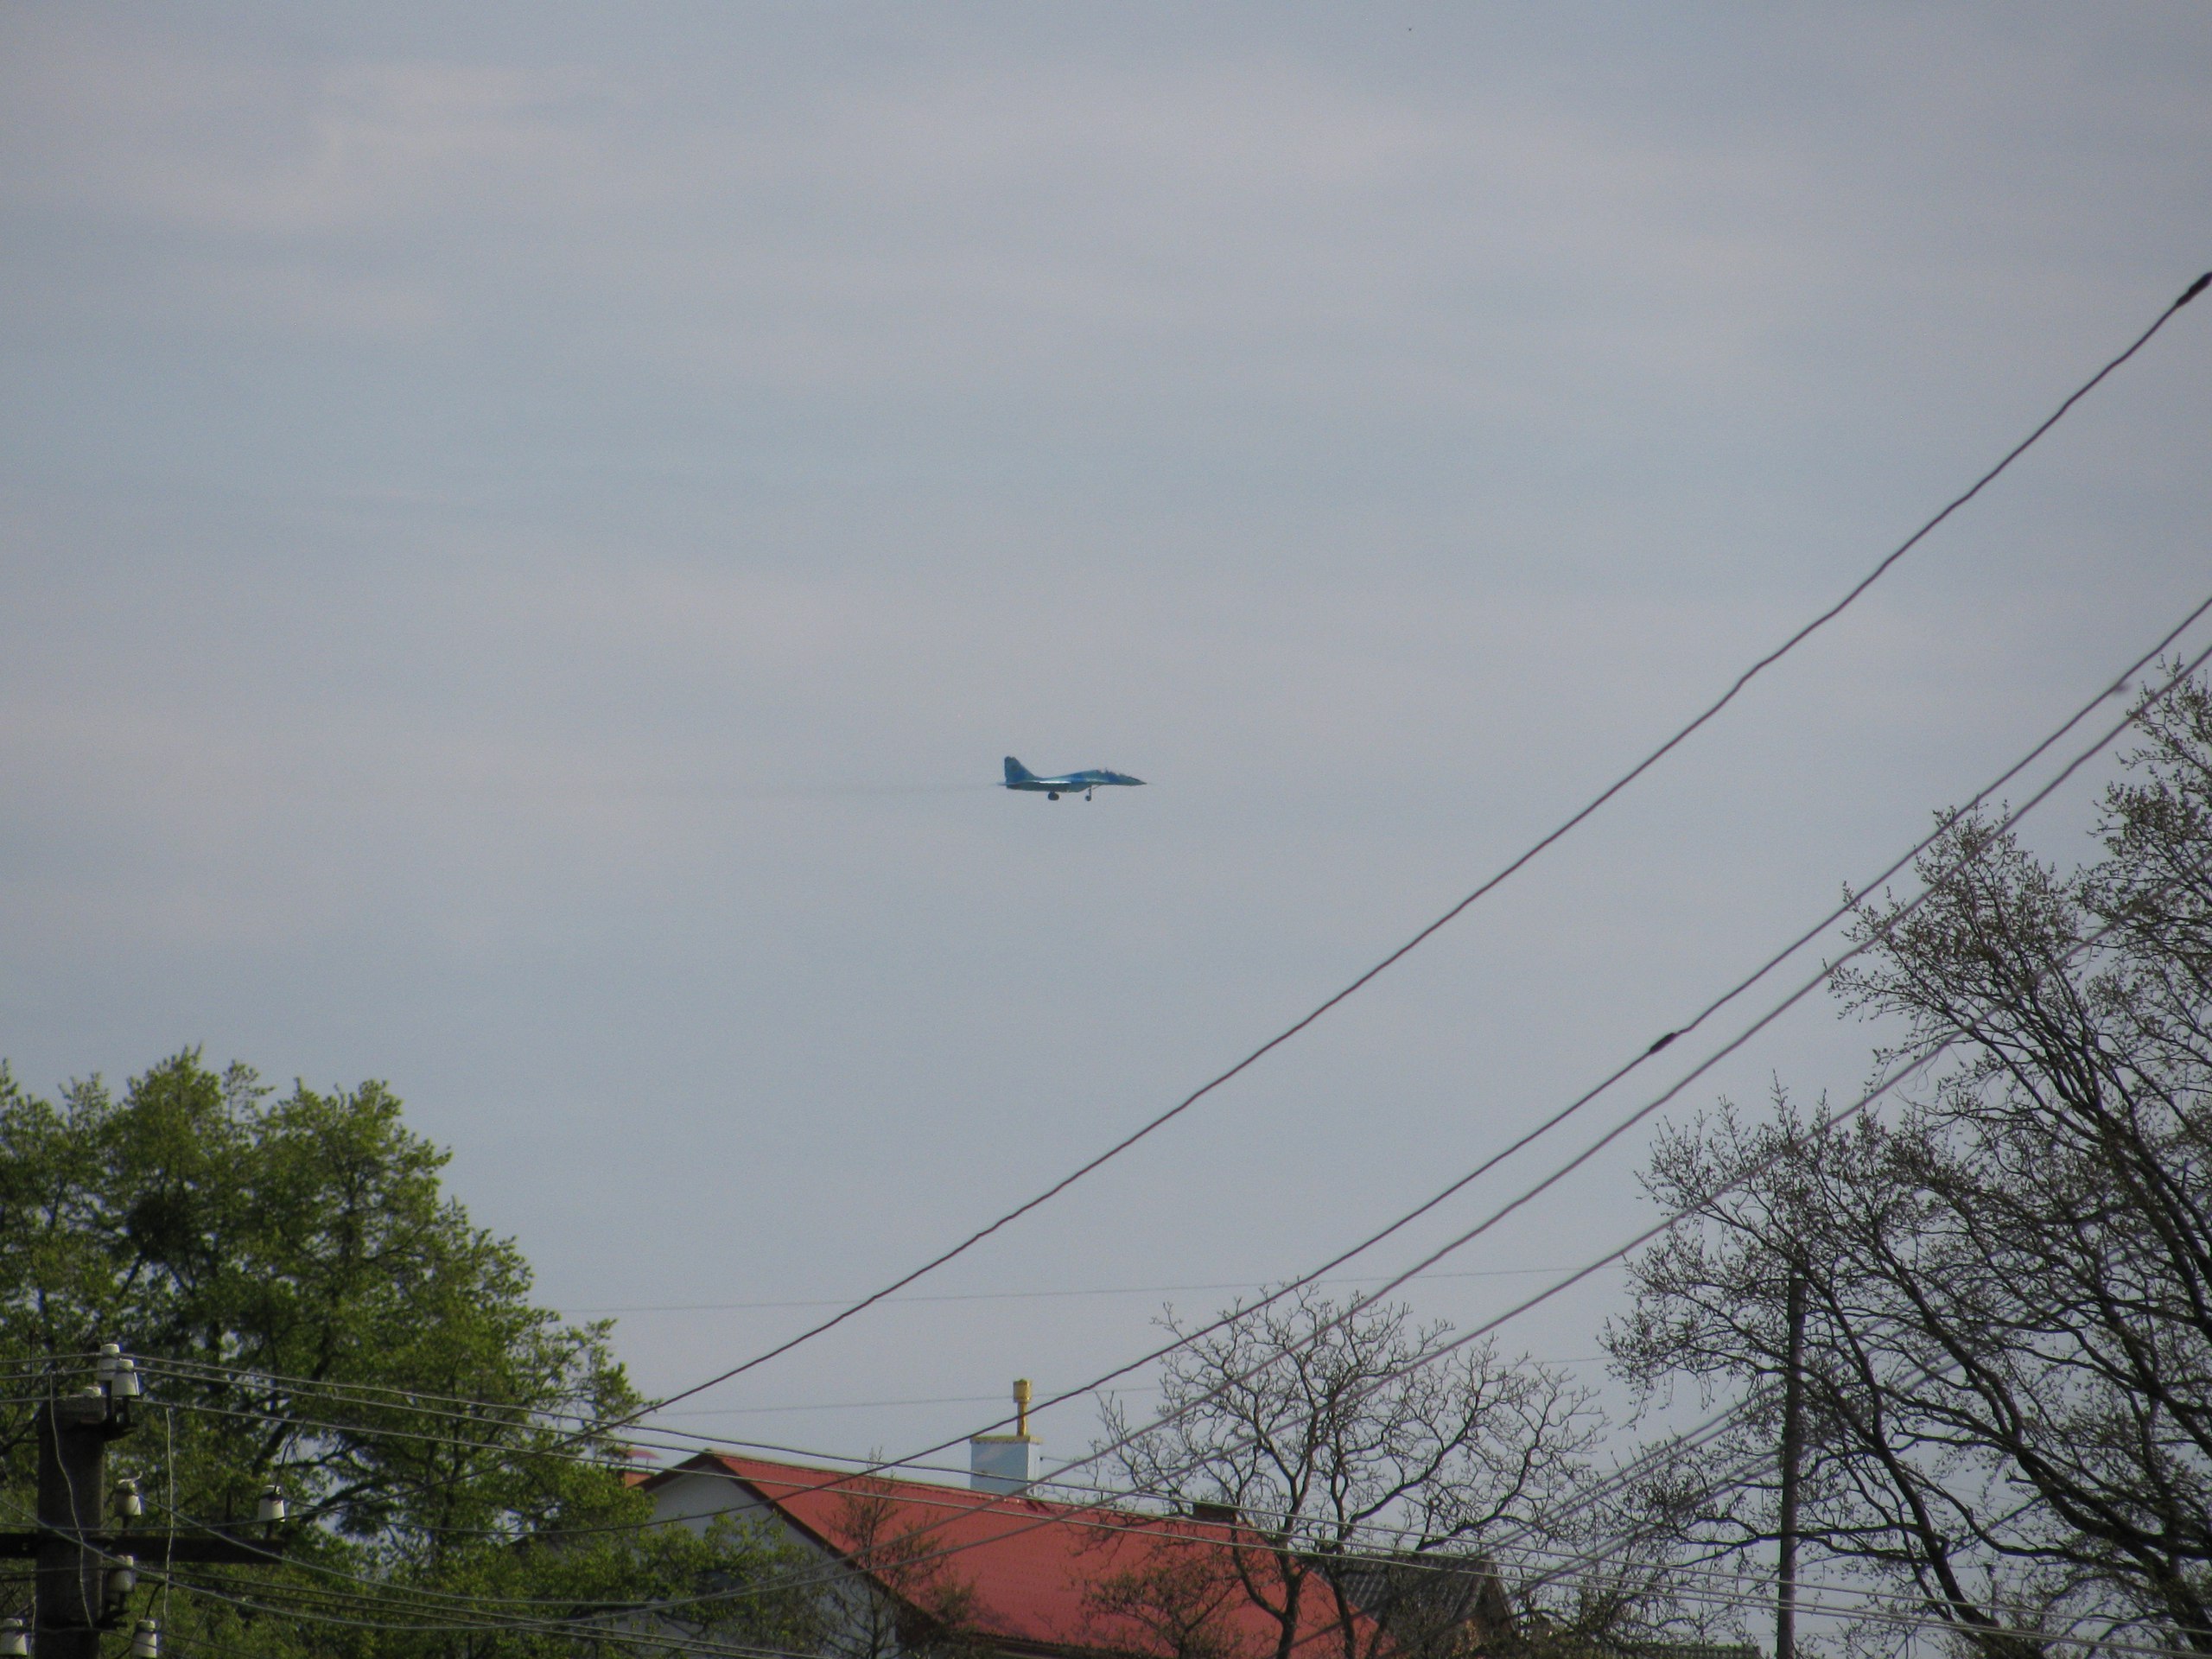 Ադրբեջանի ՌՕՈւ Միգ-29 կործանիչը թռիչքներ է կատարում Լվովում. նկարը՝ ուկրաինական մասնագիտացված MilitaryAviation.in.ua կայքից